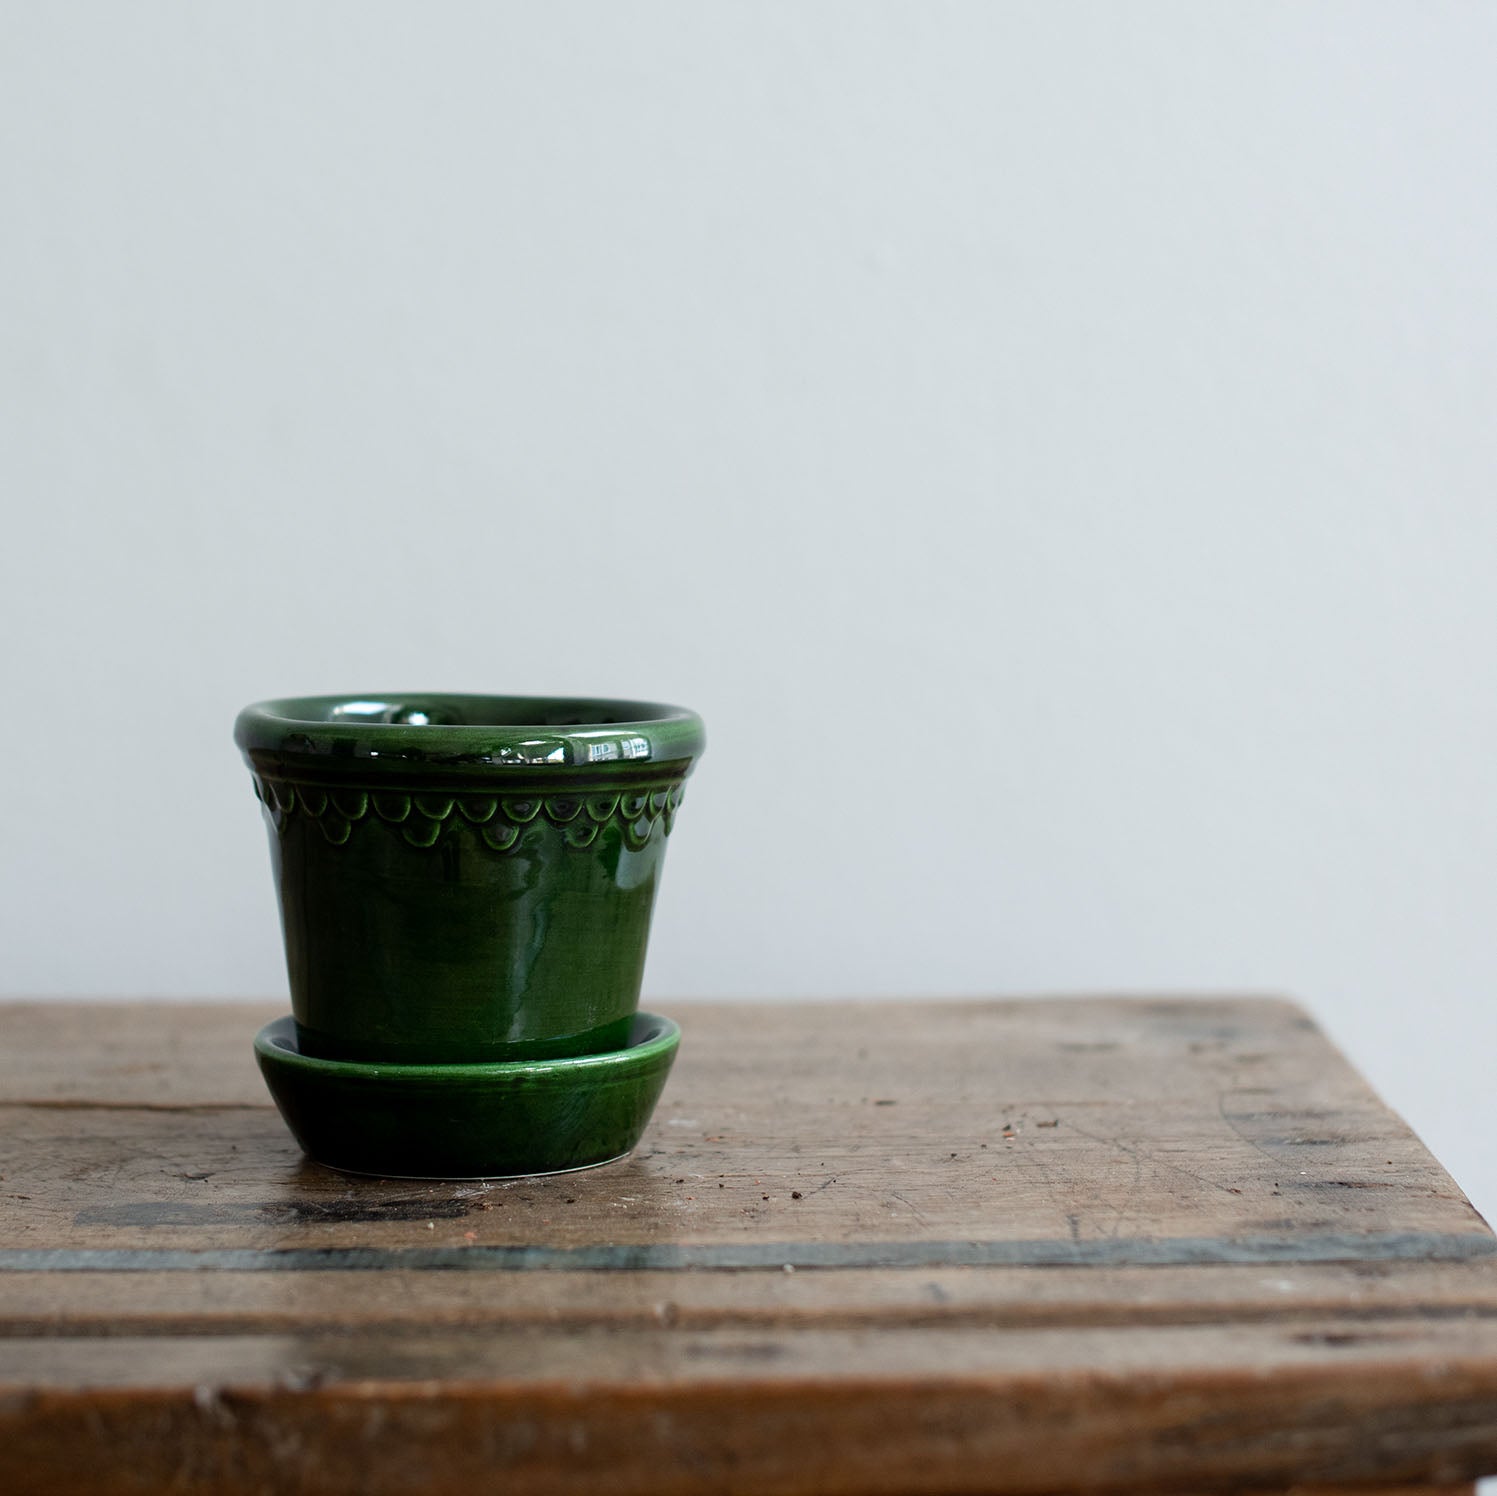 Ton Blumentopf mit Untersetzer in grün glänzend lackiert. Kopenhagener Topf, der auch als Schlosstopf von Bergs bekannt ist, hergestellt von Bergs Potter.